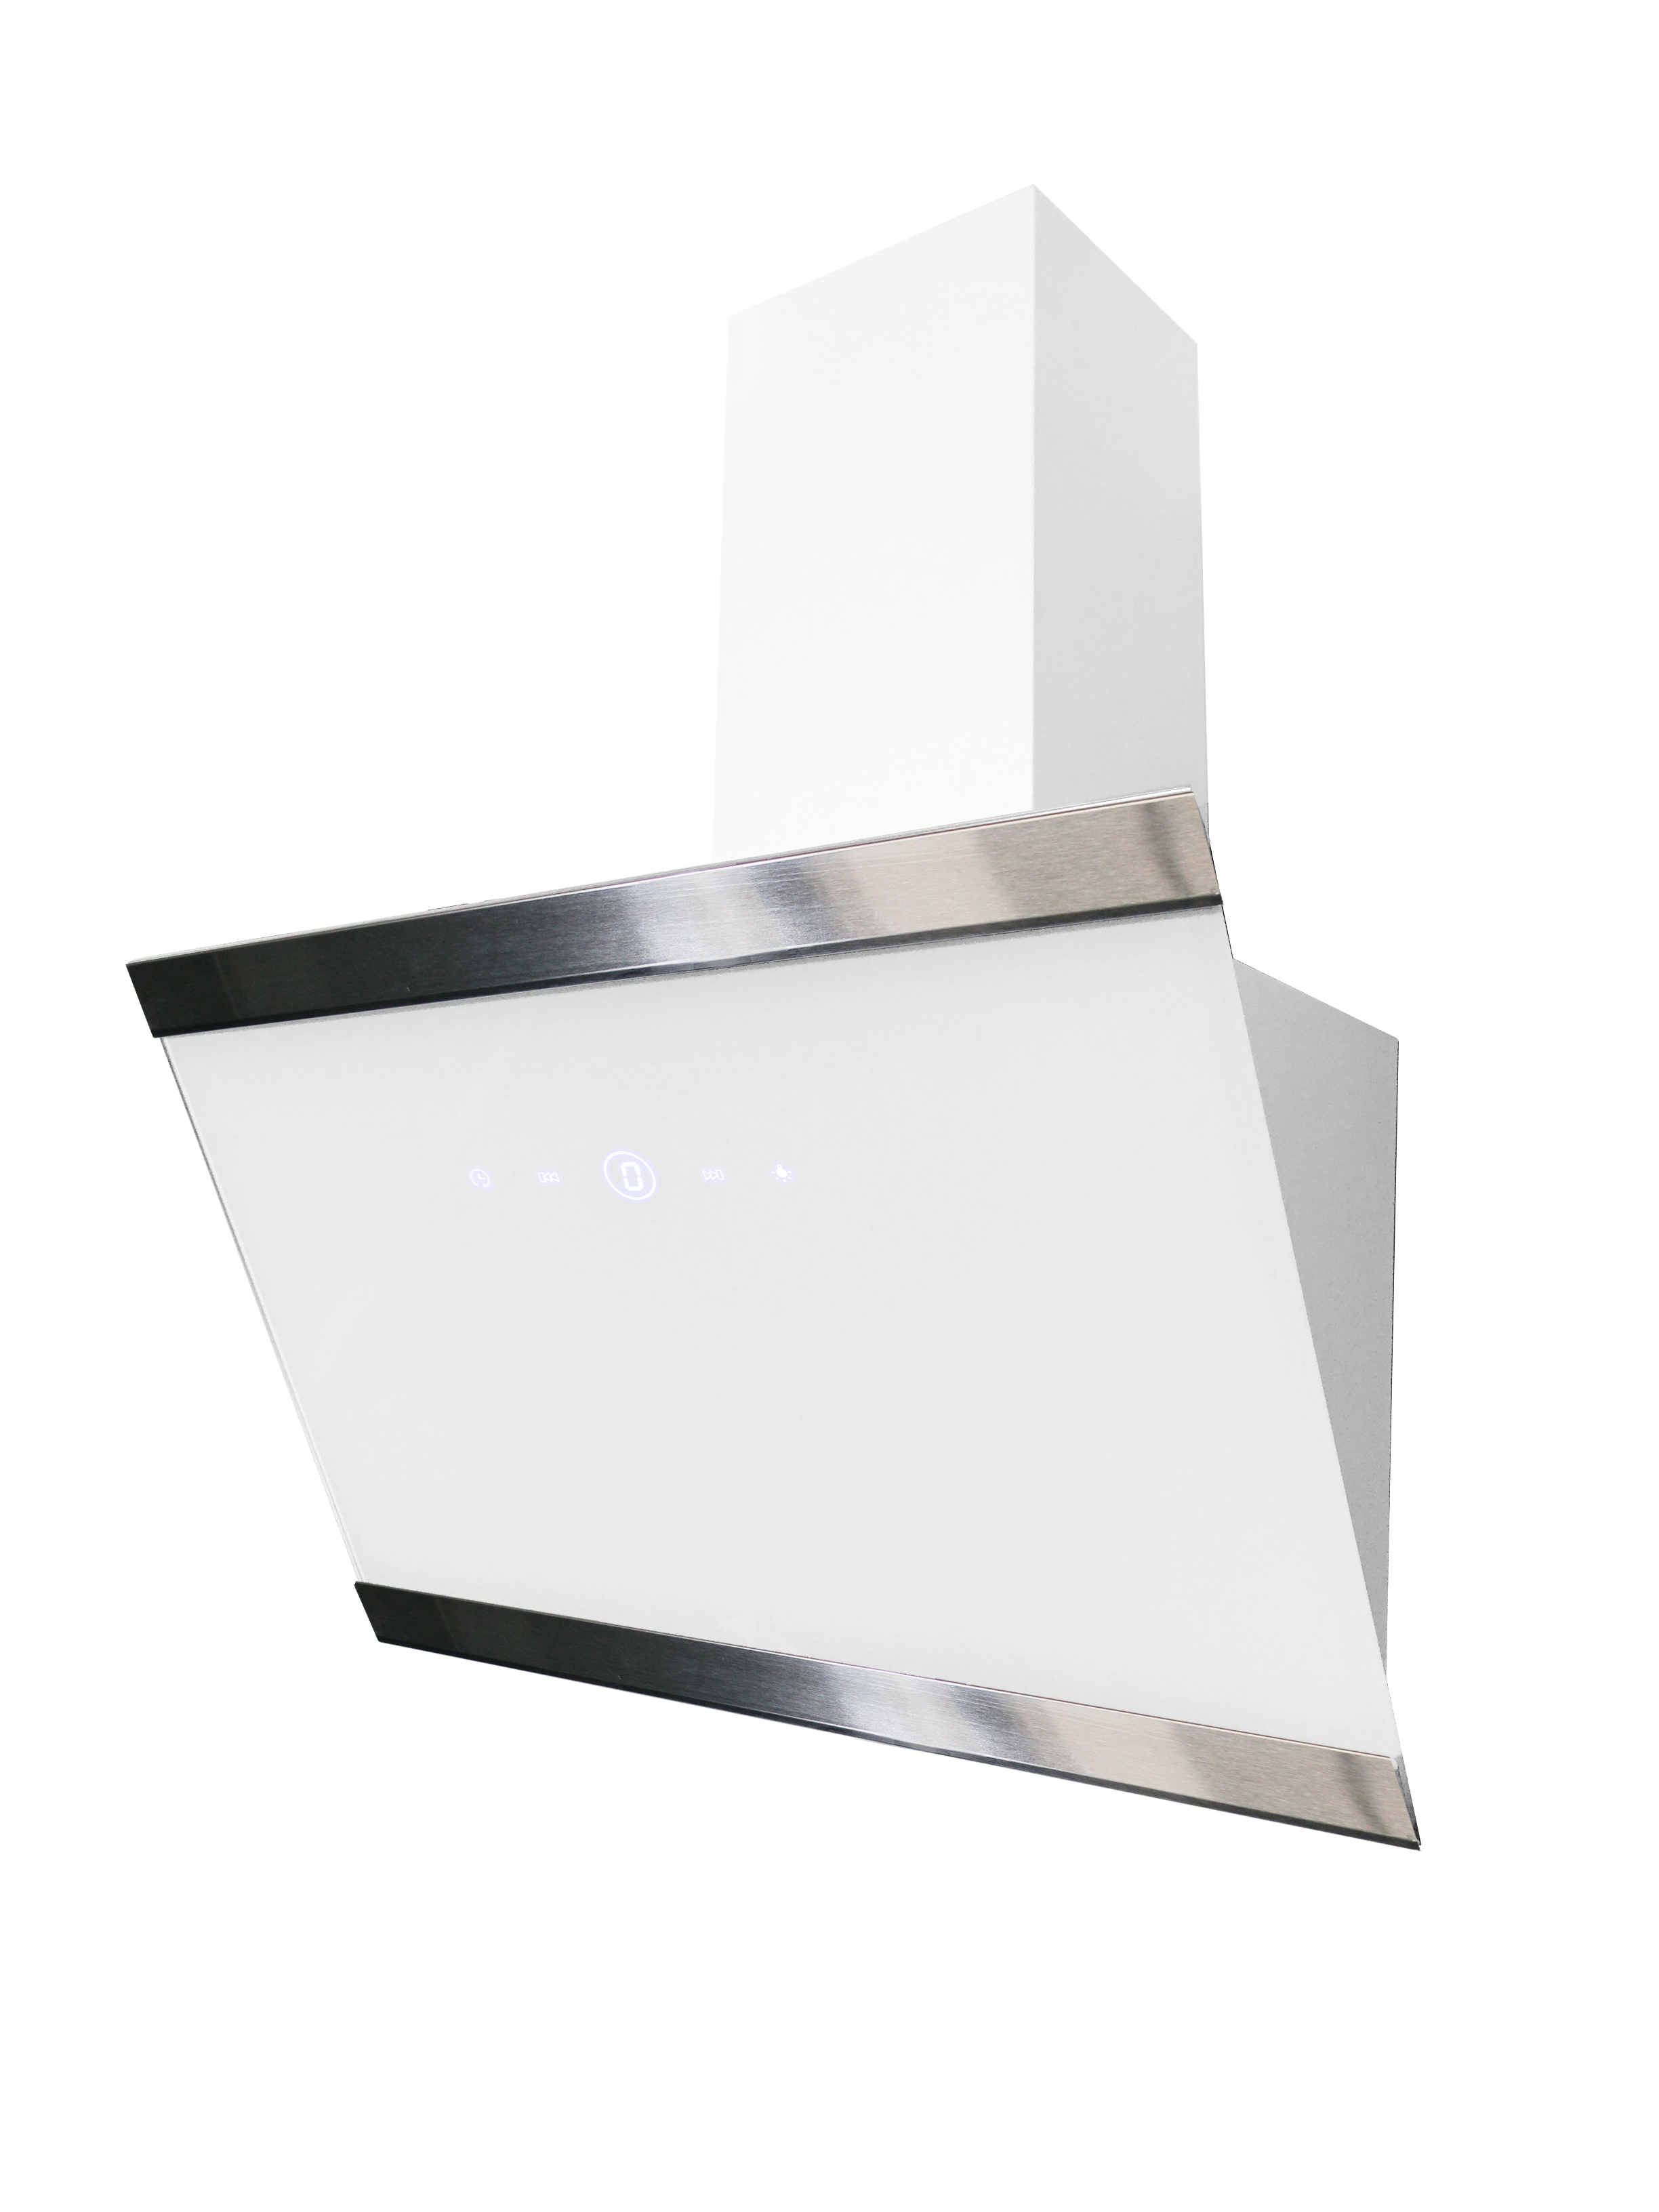 respekta slanted hood cooker hood wall hood head free glass 60 cm white EEKL A+